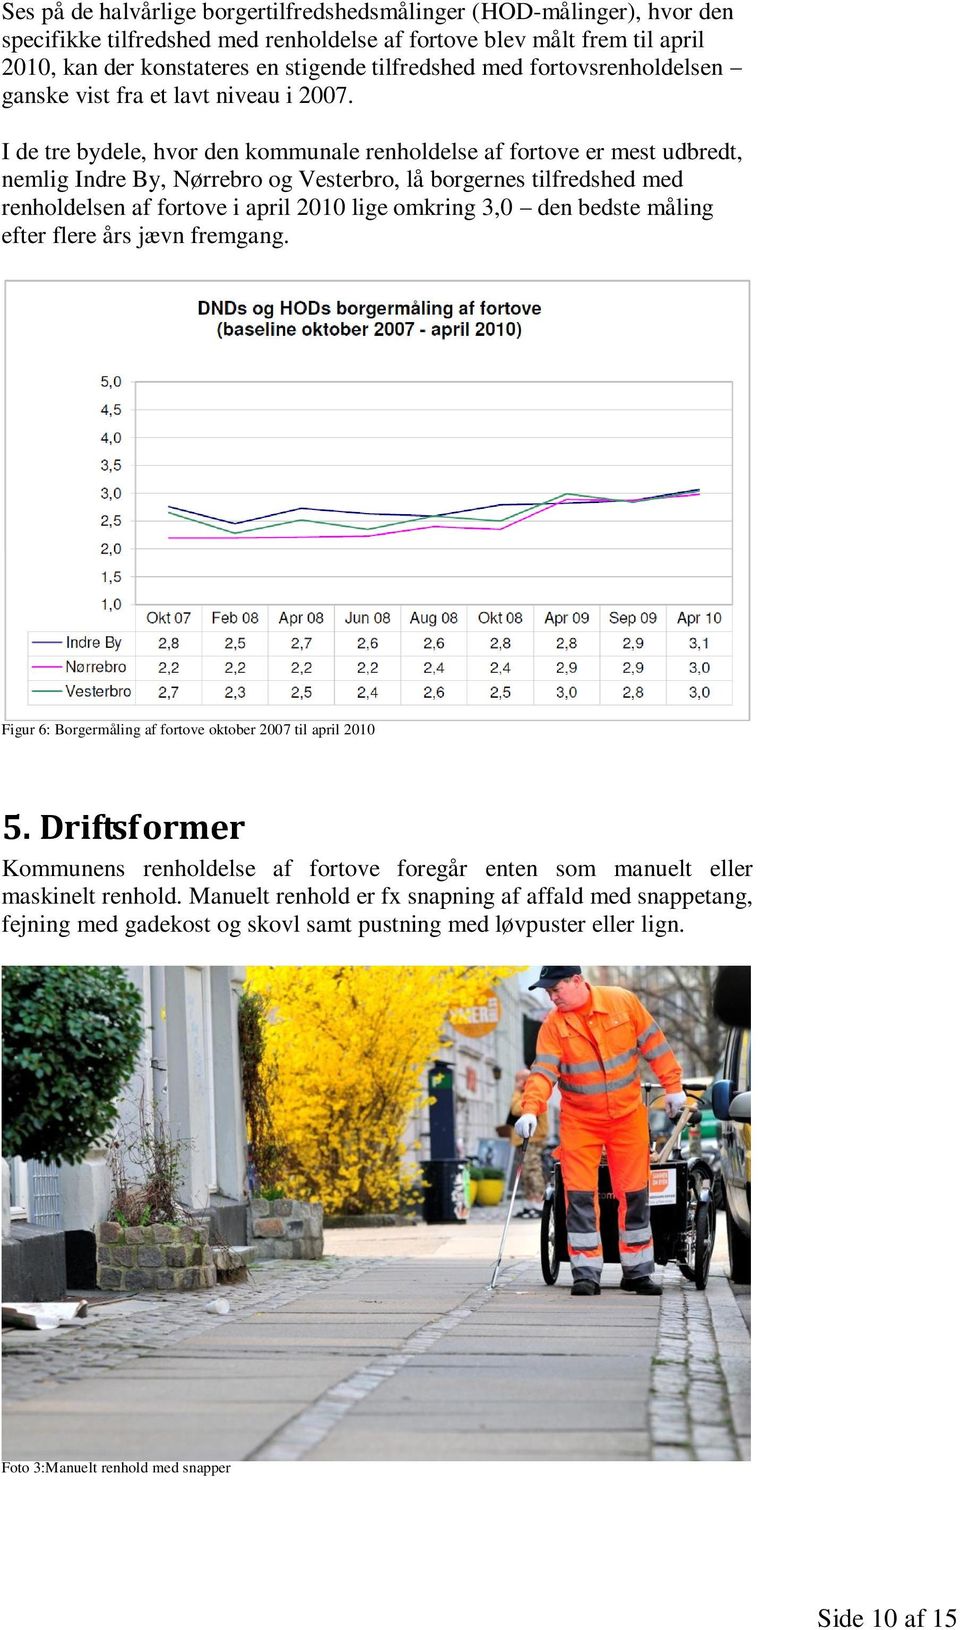 I de tre bydele, hvor den kommunale renholdelse af fortove er mest udbredt, nemlig Indre By, Nørrebro og Vesterbro, lå borgernes tilfredshed med renholdelsen af fortove i april 2010 lige omkring 3,0